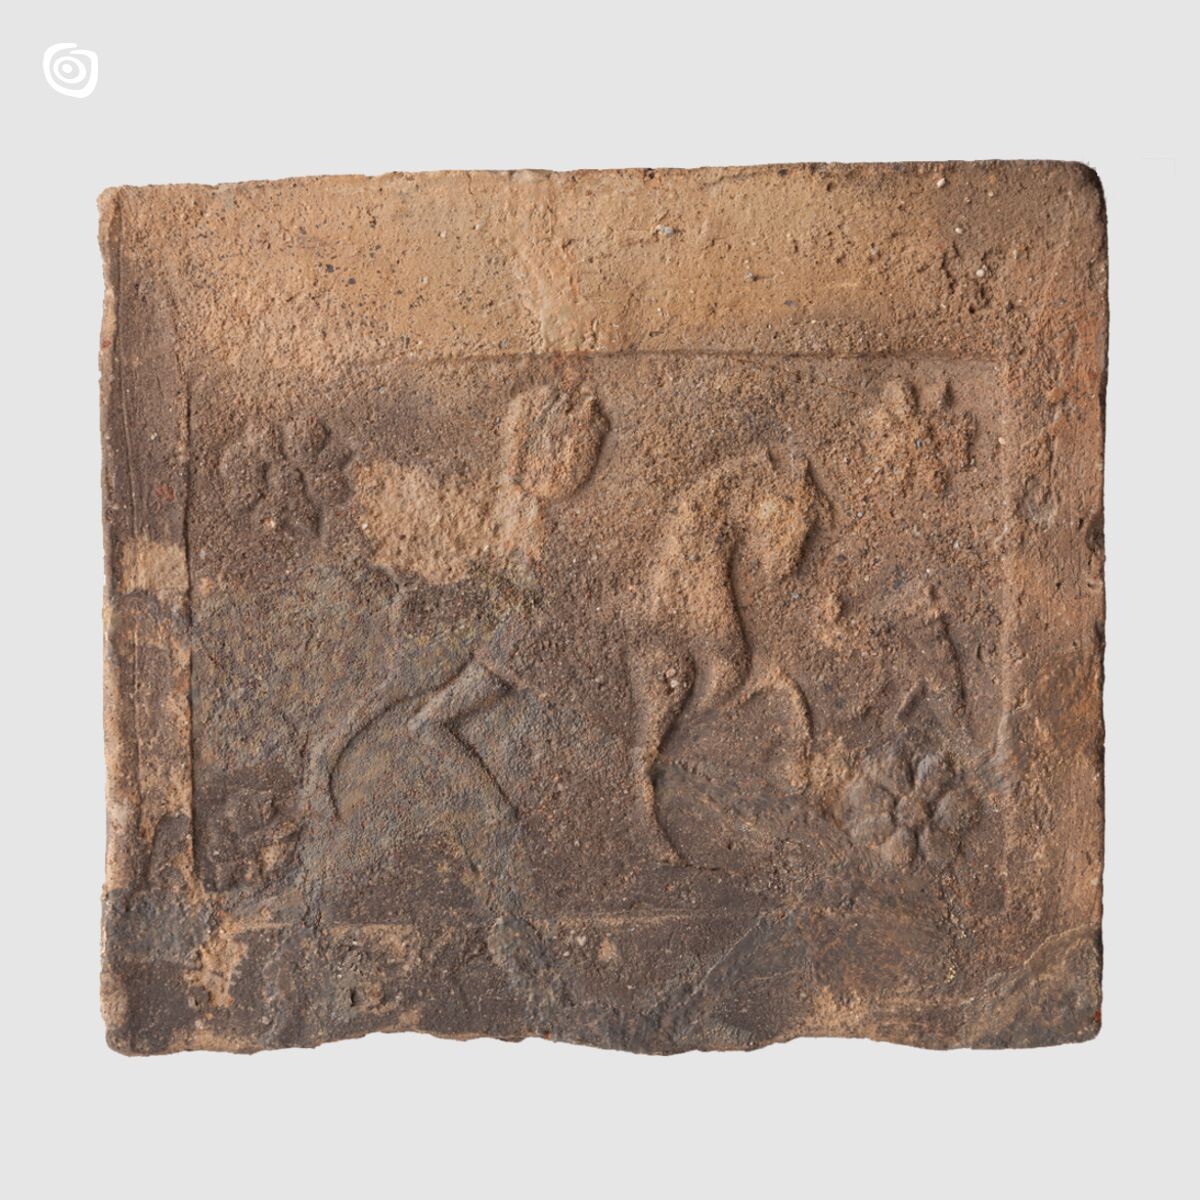 Płytka ceramiczna - Koń, Gniezno, wczesne średniowiecze